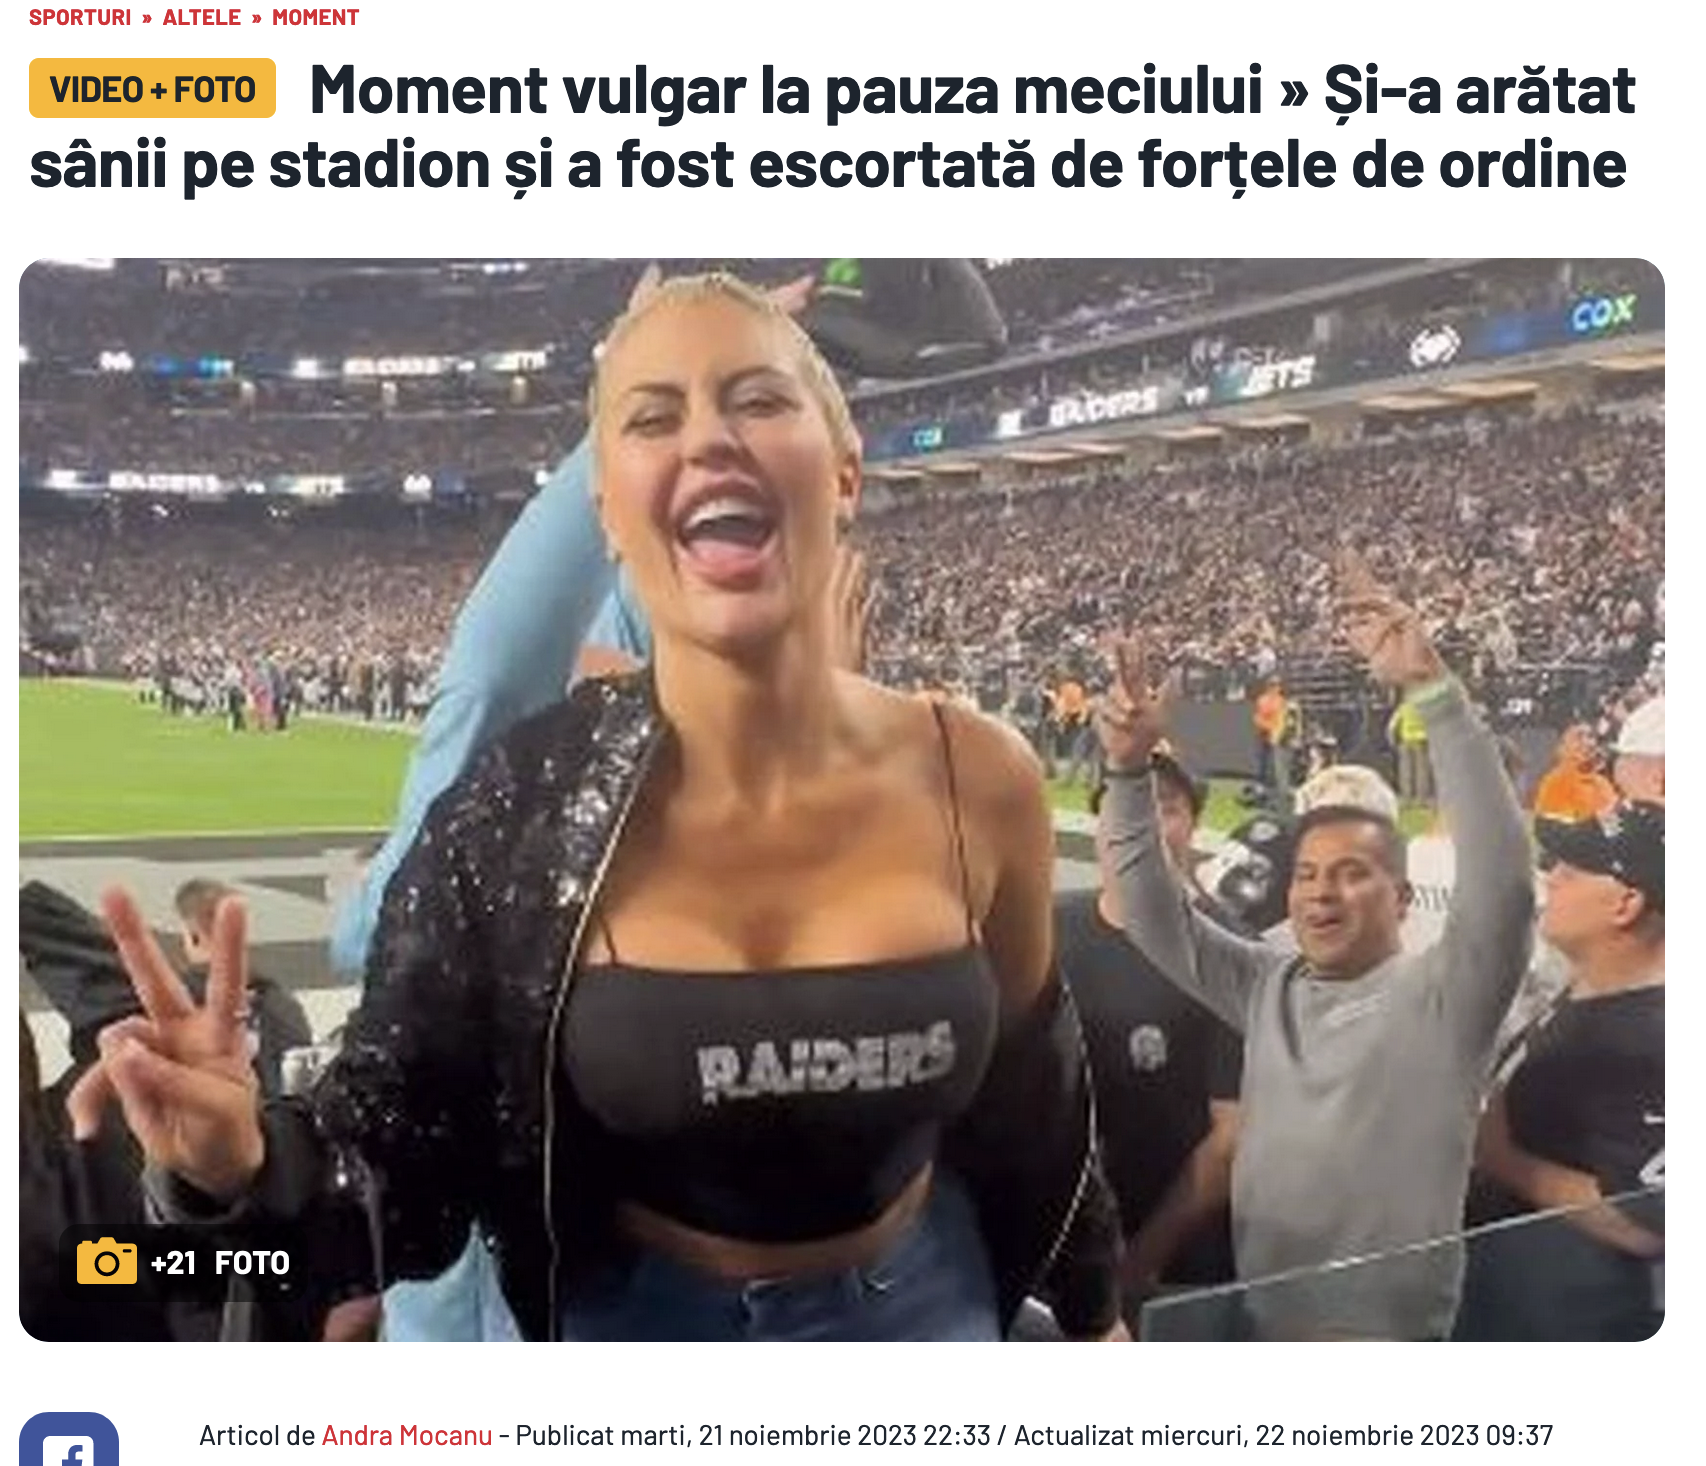 Gazeta are o orientare editorială aparte când vine vorba de pasionații de masturbare.